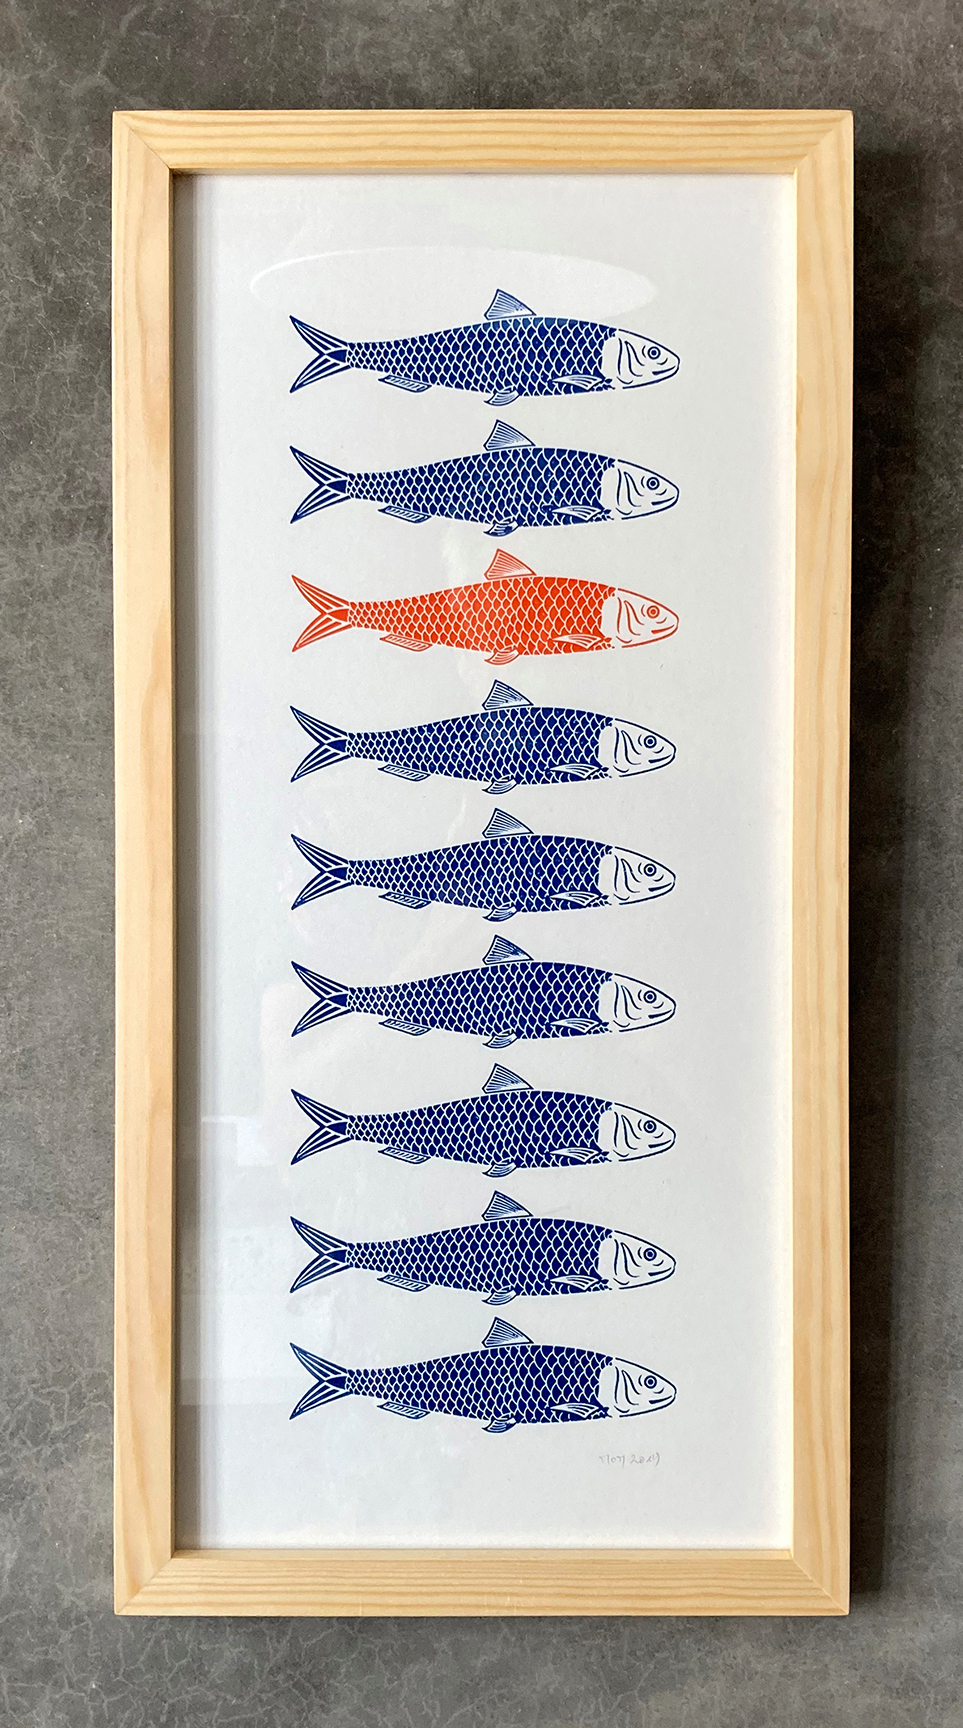 Impression typo. Série sardine bleu-orange. 23 x 50 cm.